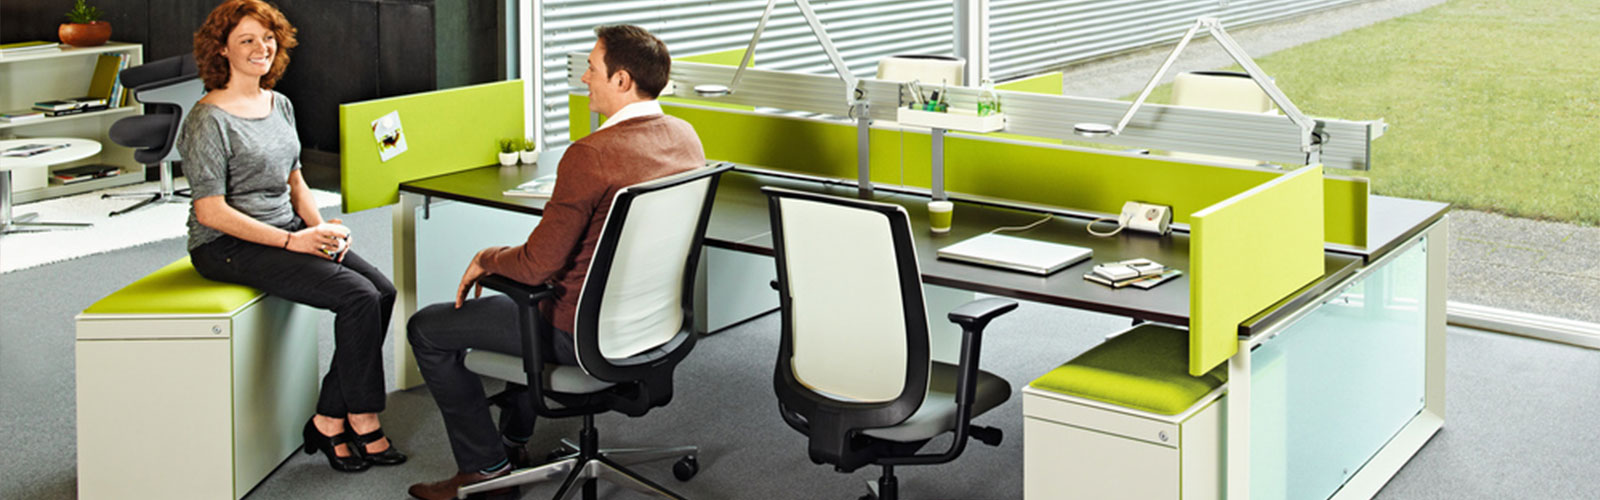 Collaborative-hot-desk